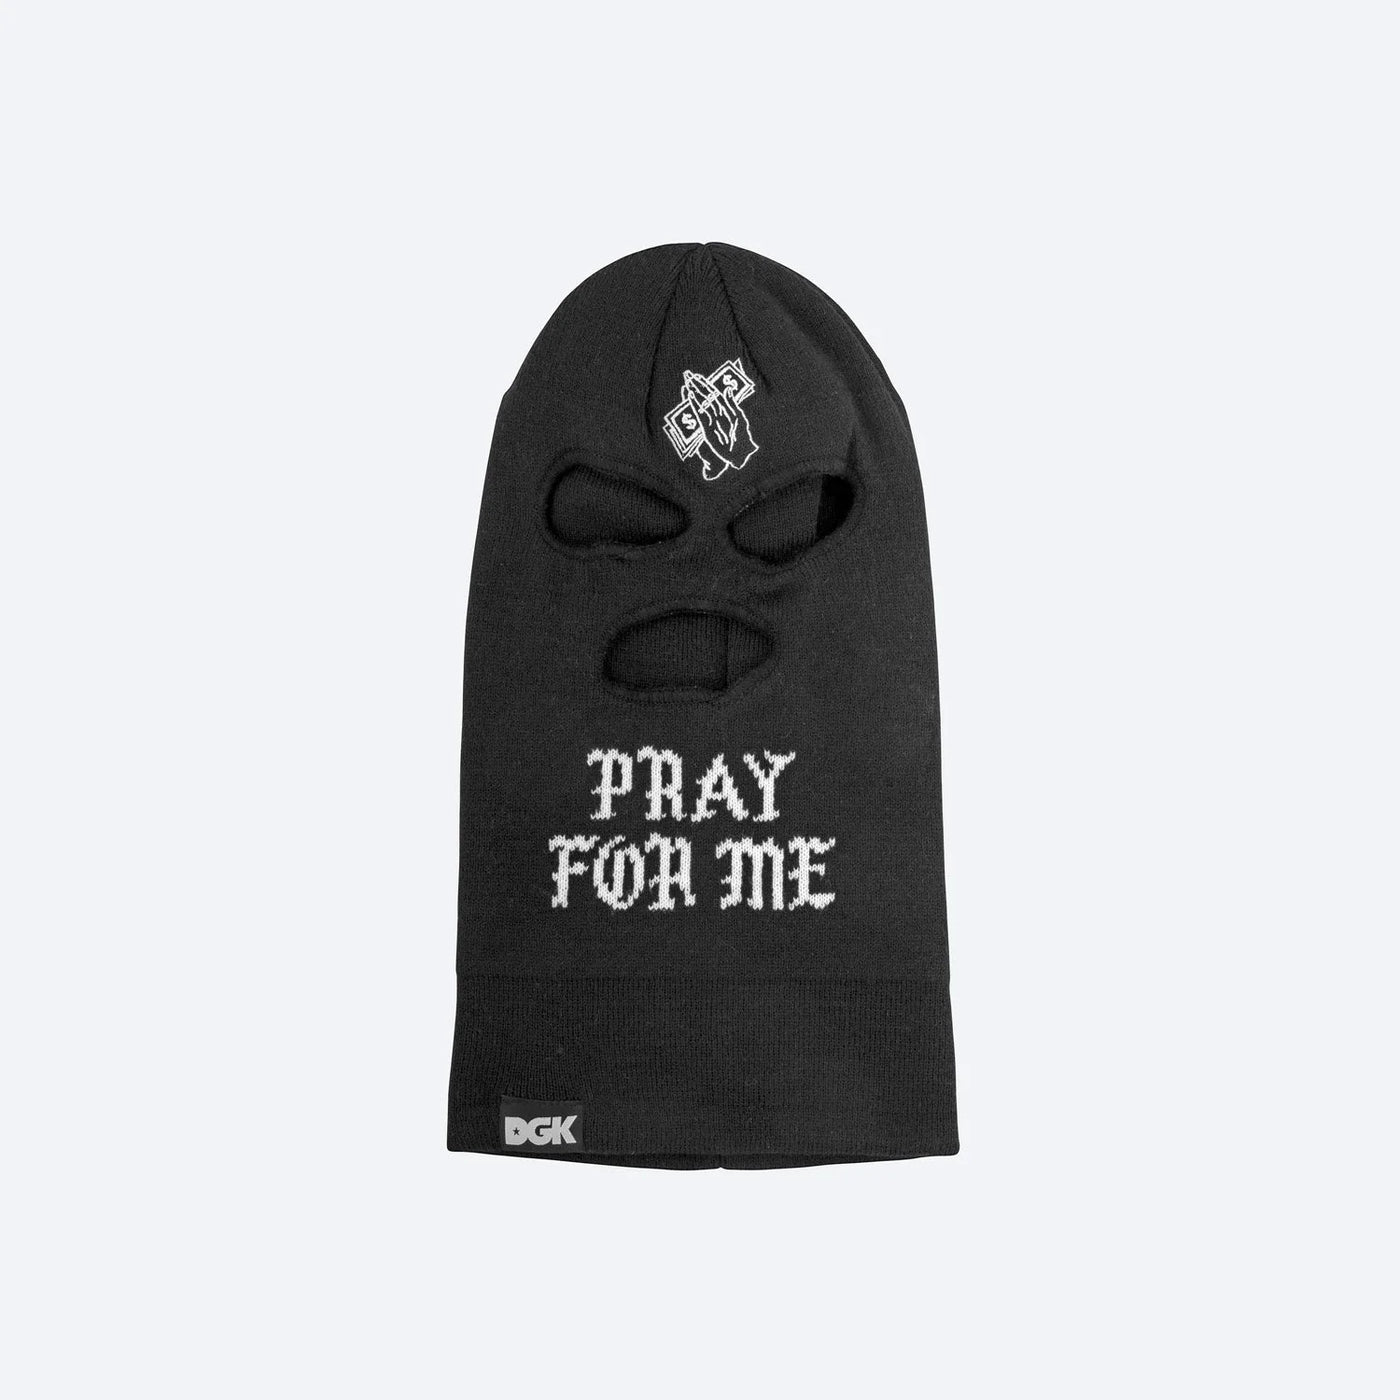 DGK Pray For Me Ski Mask - Black